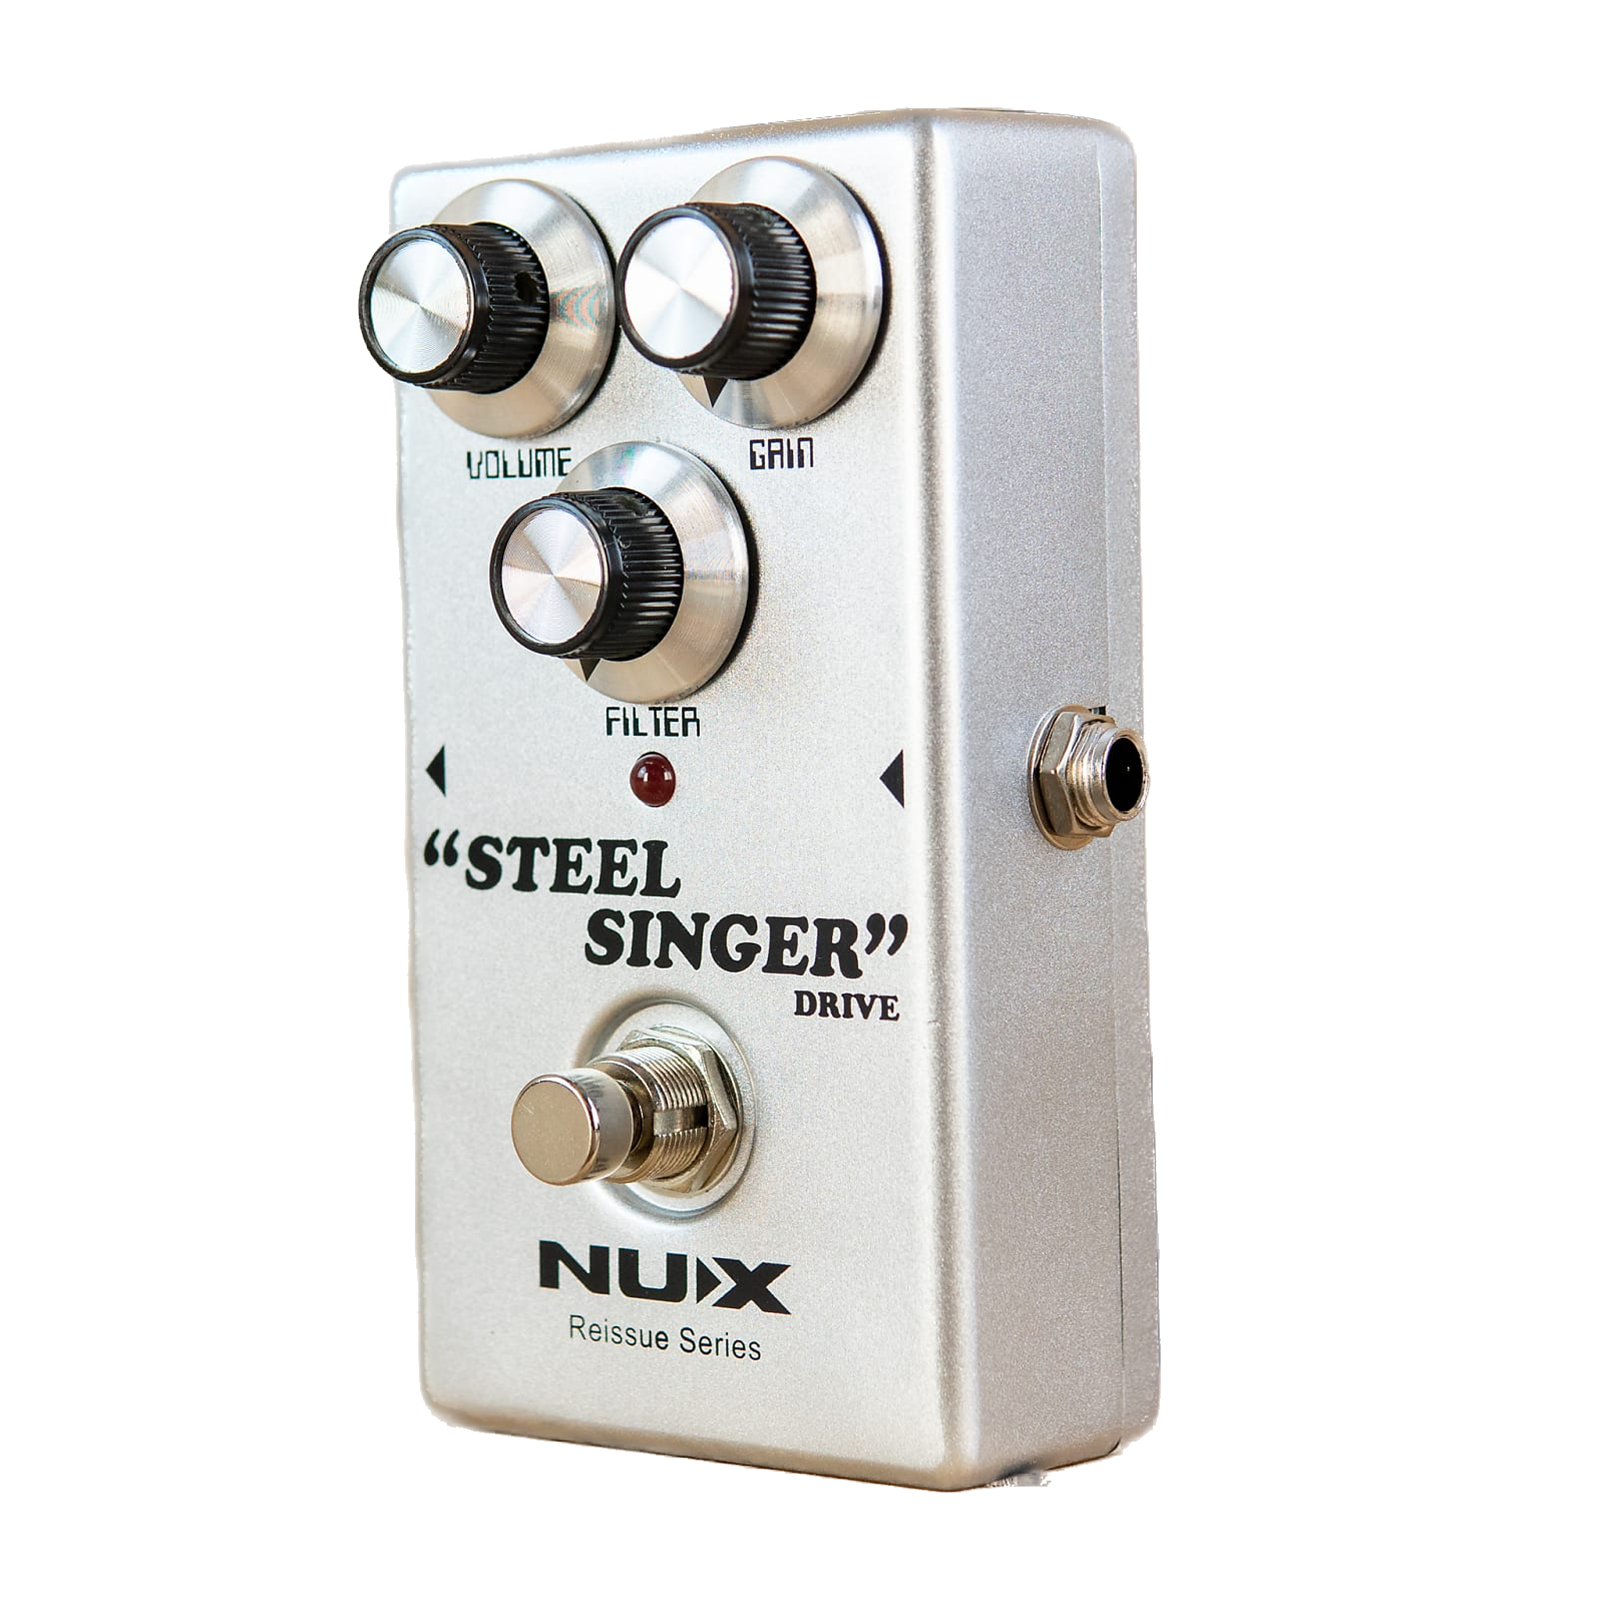 Nux steel singer